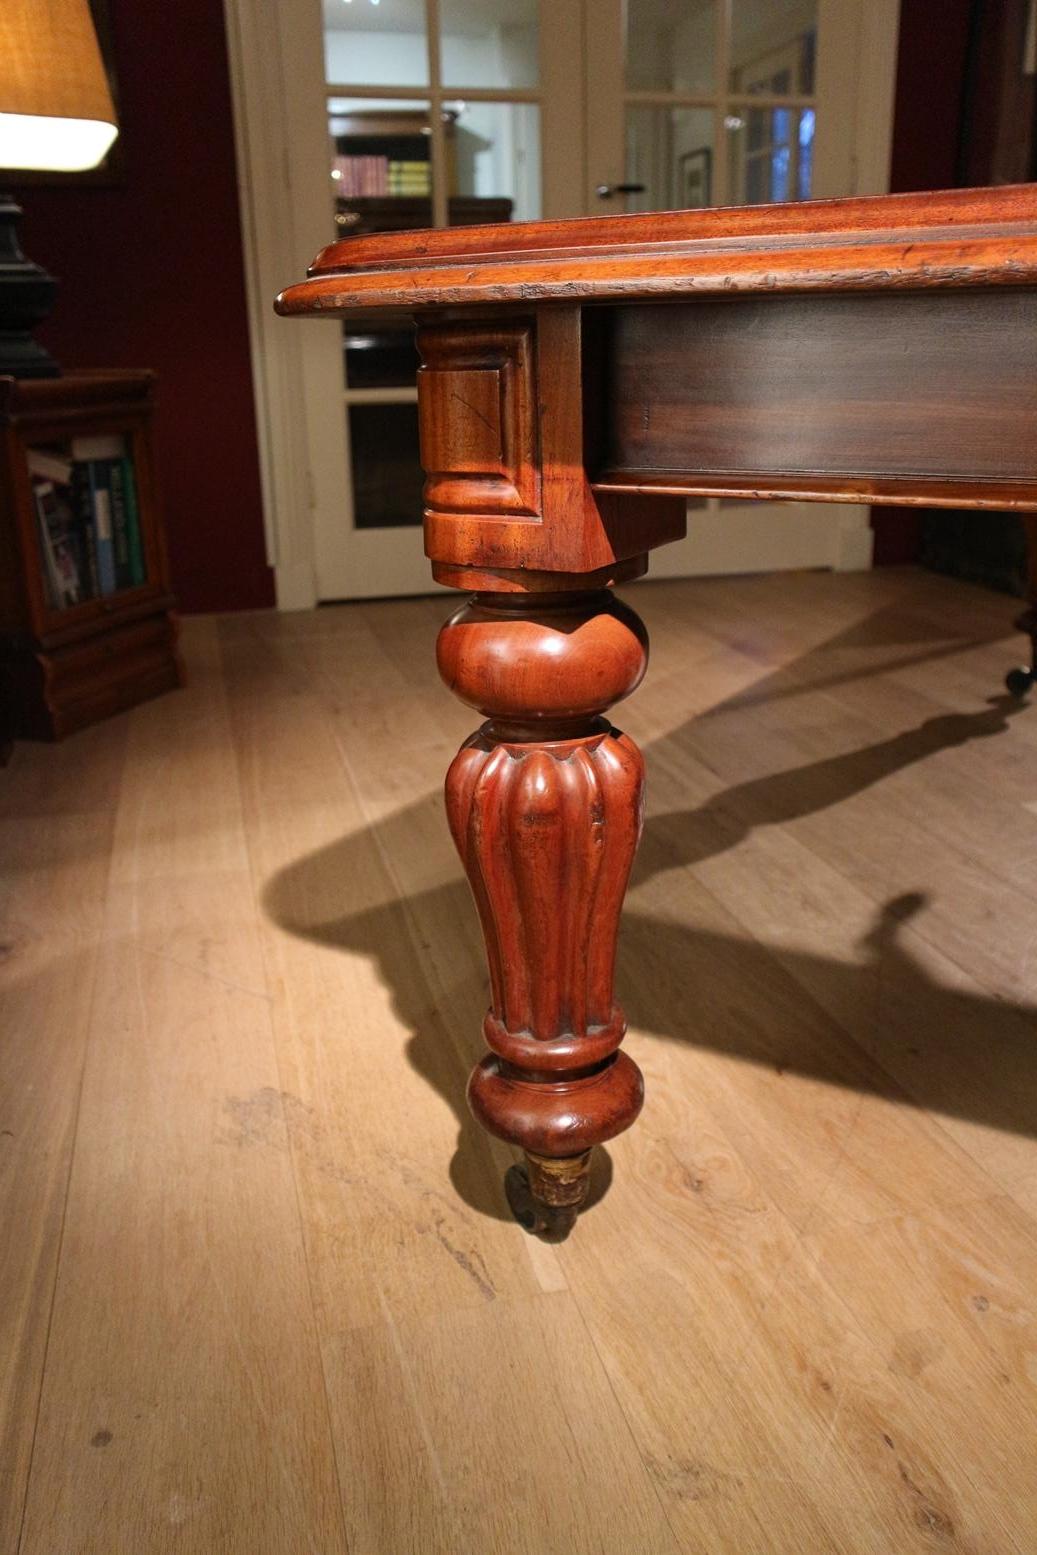 Early Victorian 19th Century mahogany dining table